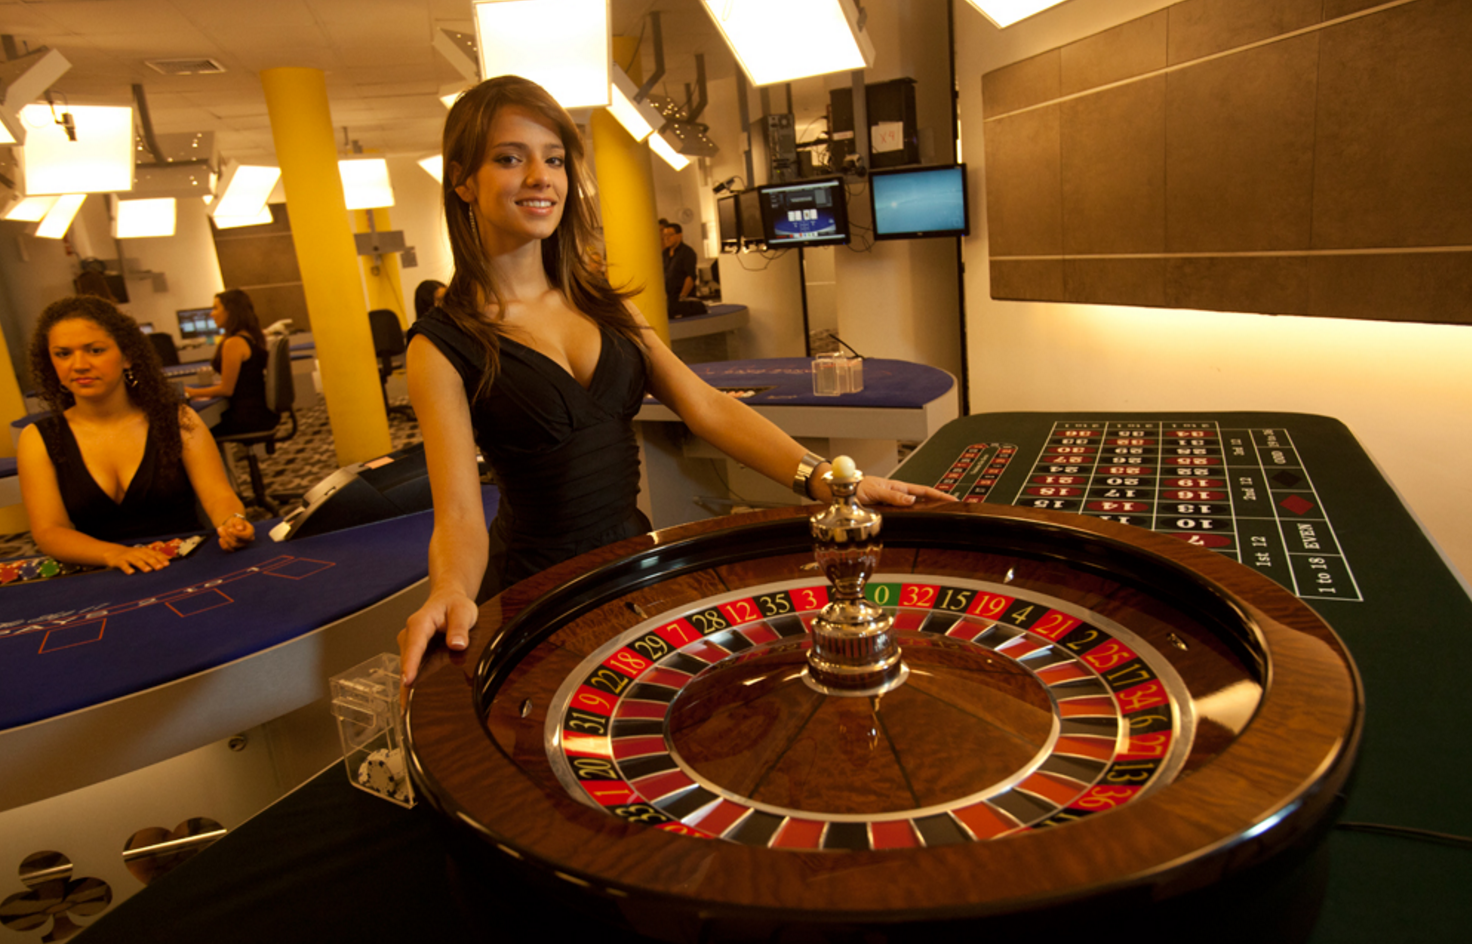 Рулетка онлайн казино на реальные деньги